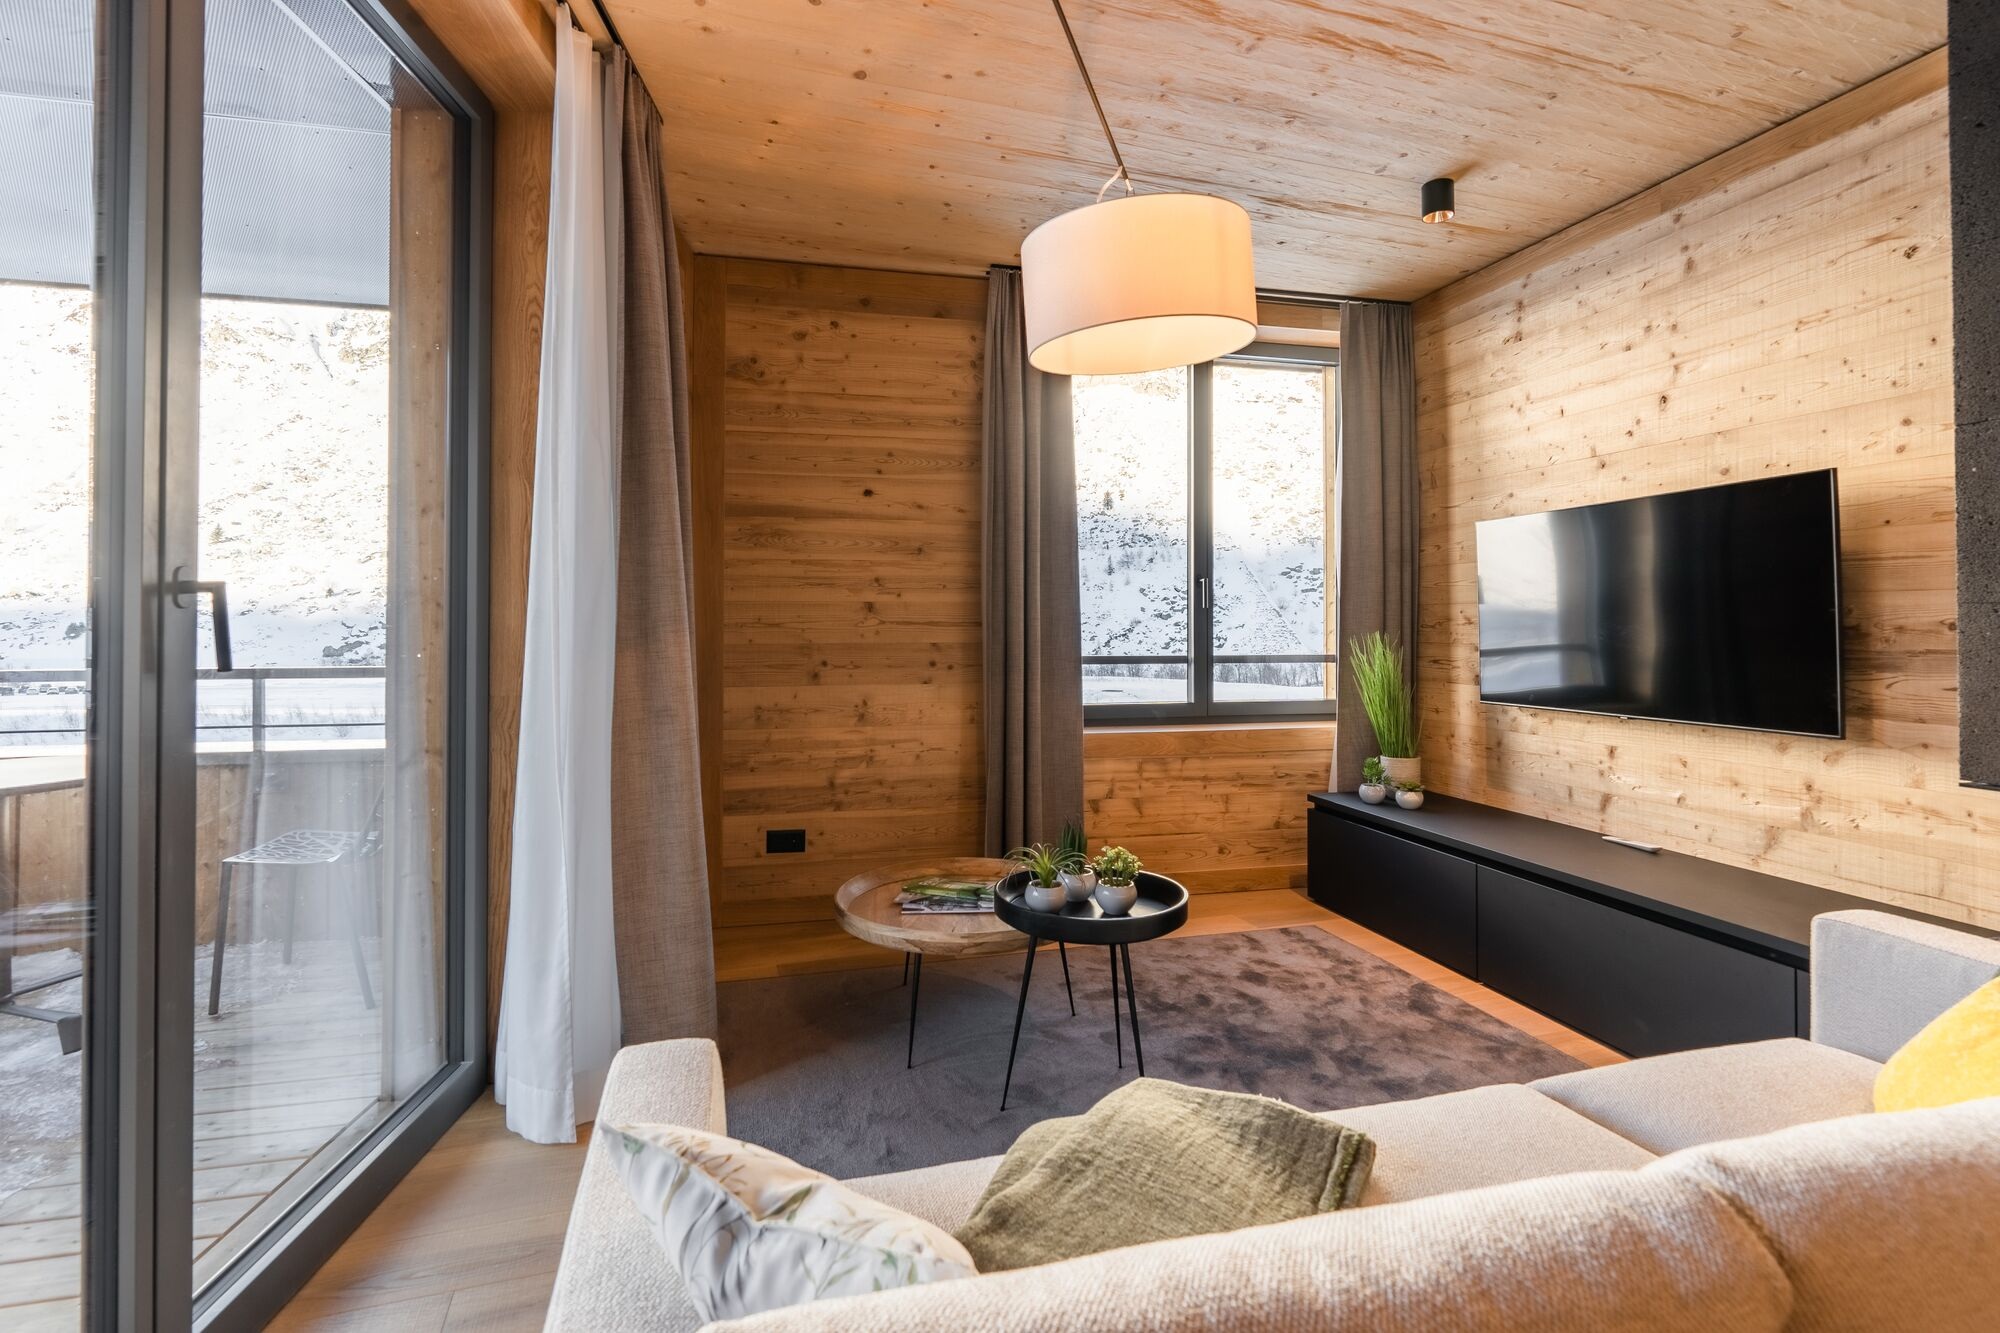 Salon in einer TurmfalkenSuite mit Innenausbau in Holz